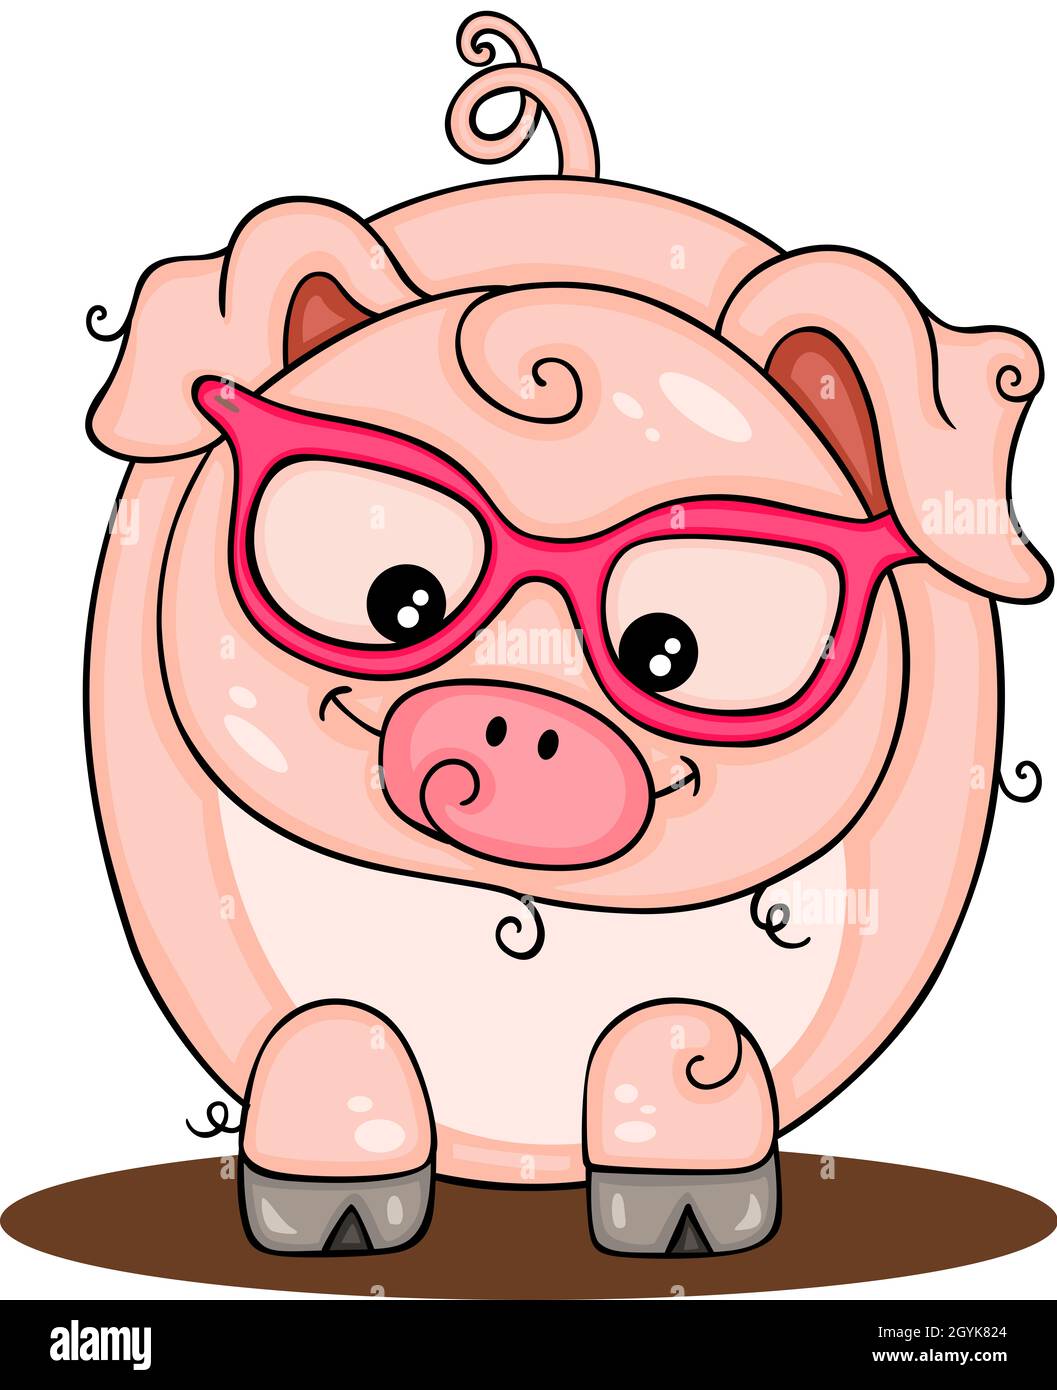 Cerdo con gafas fotografías e imágenes de alta resolución - Alamy